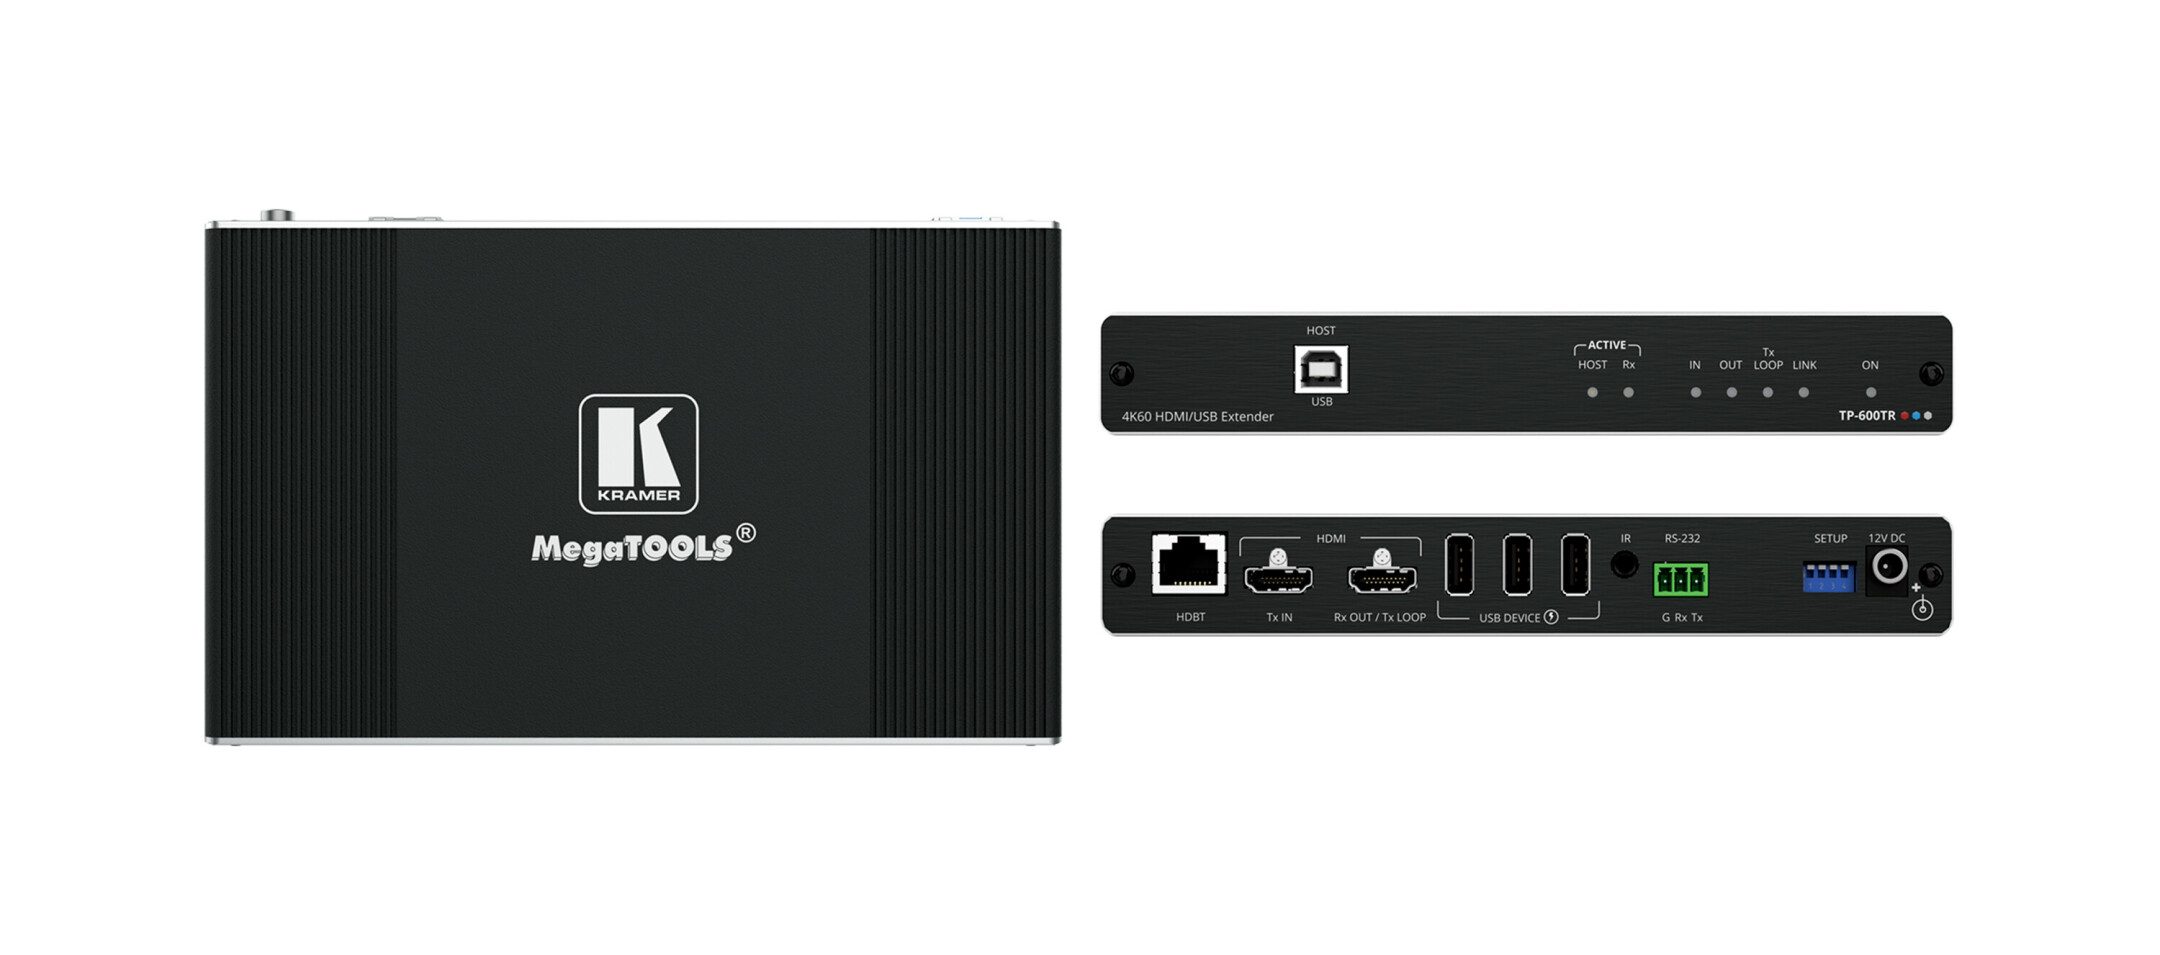 Kramer-TP-600TR-4K60-4-4-4-HDMI-Extender-met-USB-Ethernet-RS-232-Infrarood-via-HDBaseT-3-0-met-groot-bereik